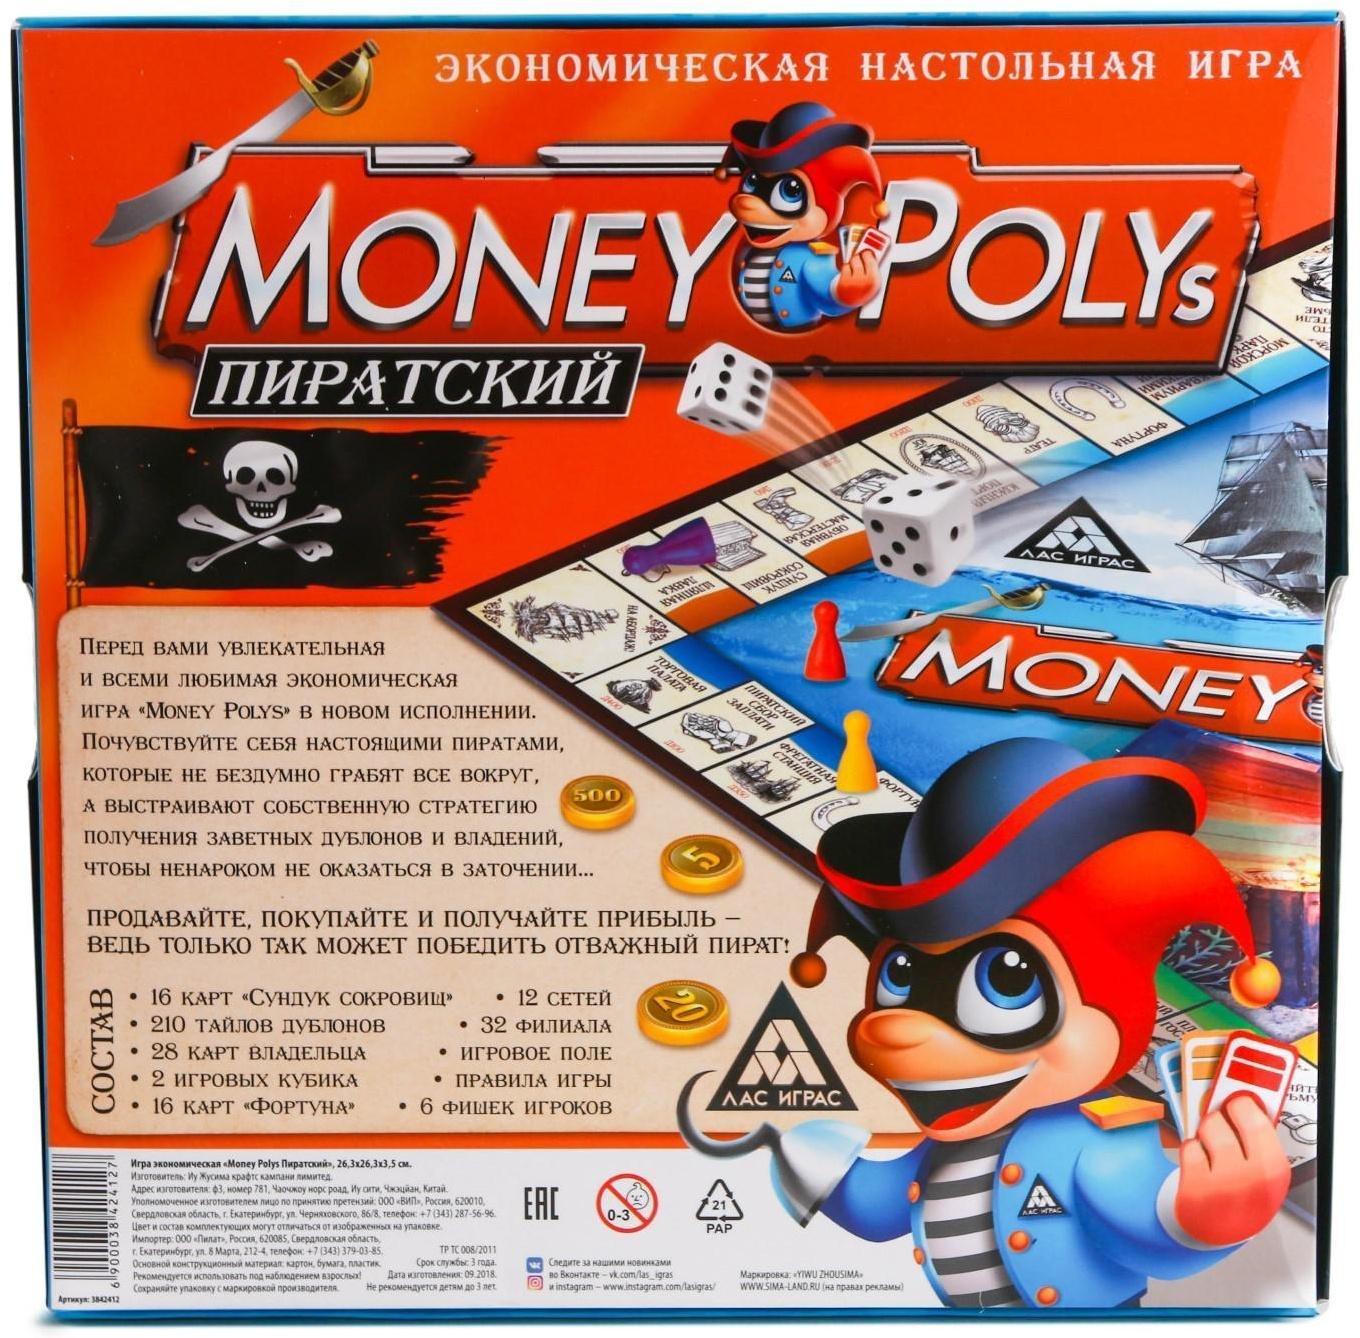 Экономическая игра «MONEY POLYS. Пиратский», 8+